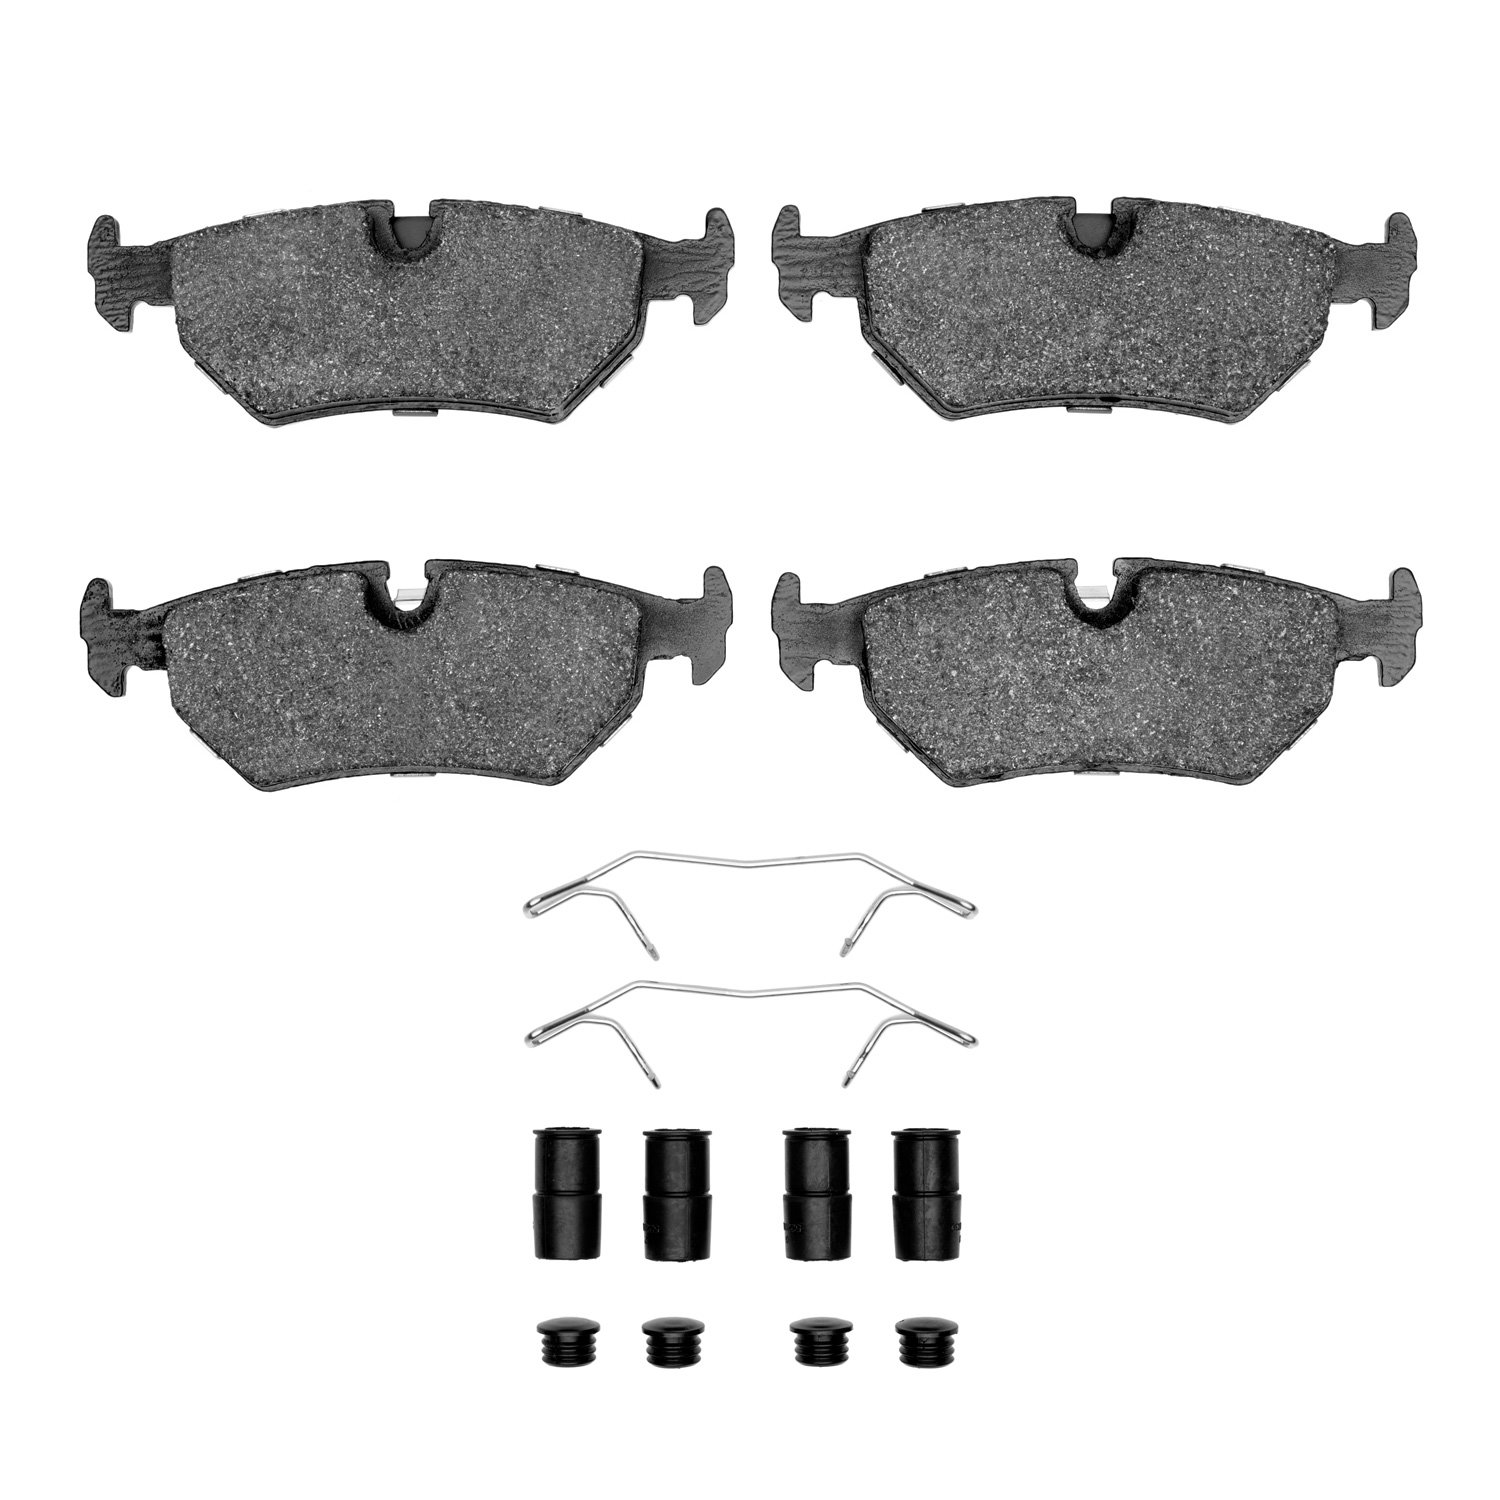 1551-0517-01 5000 Advanced Low-Metallic Brake Pads & Hardware Kit, 1990-1995 Jaguar, Position: Rear